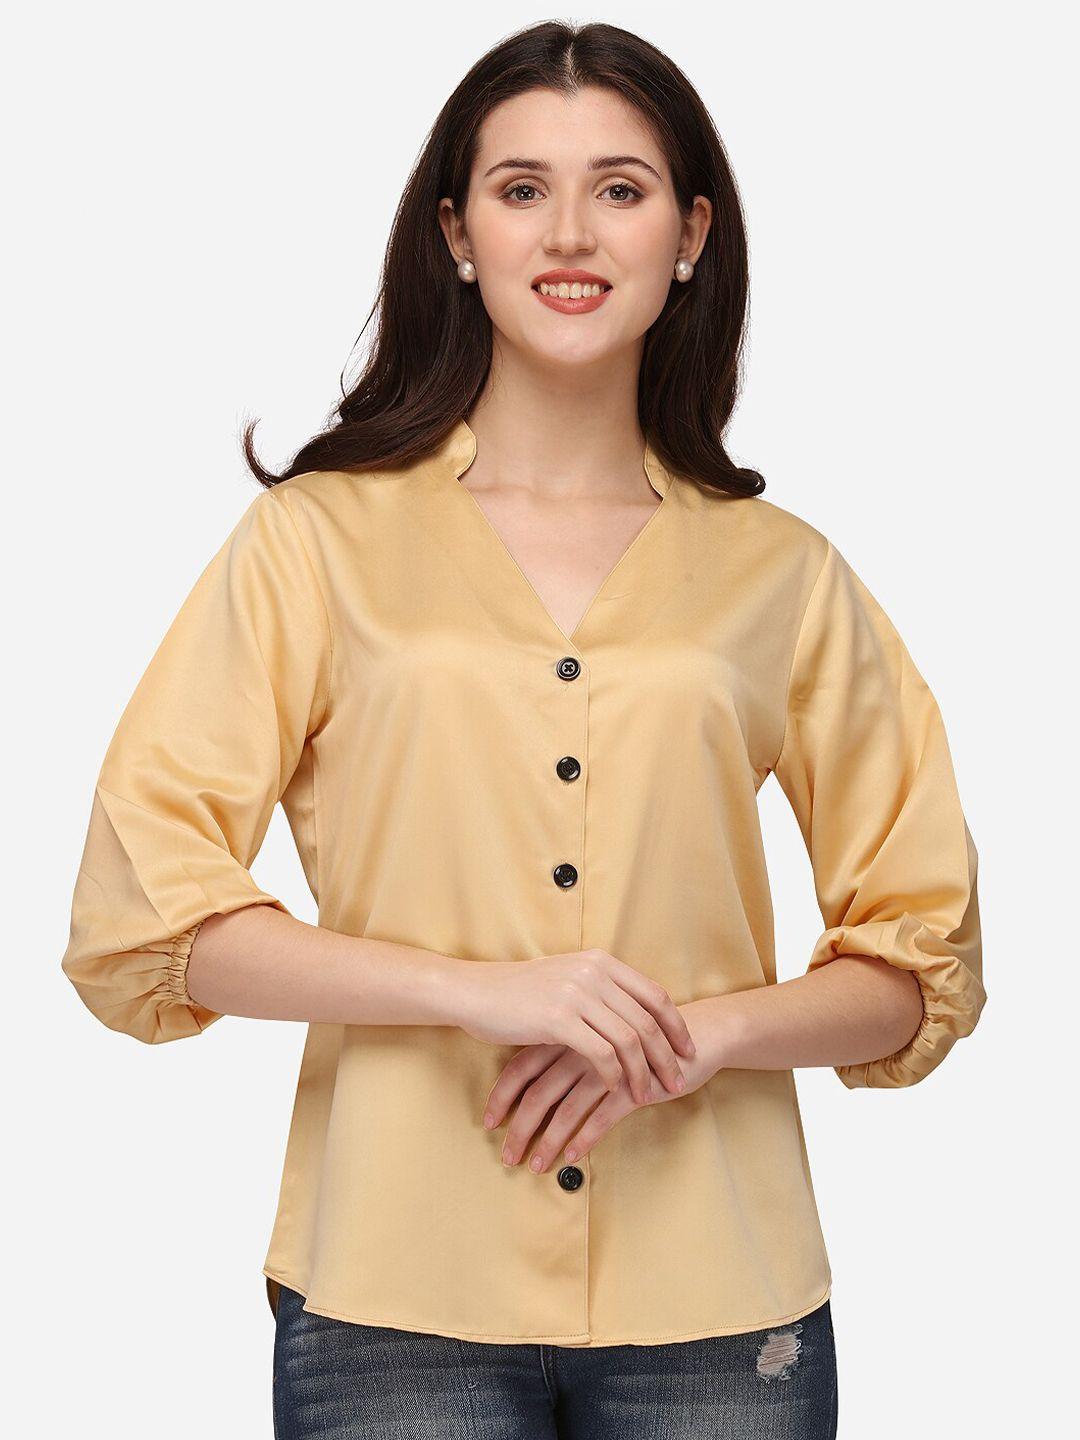 smarty pants women gold-toned semiformal shirt